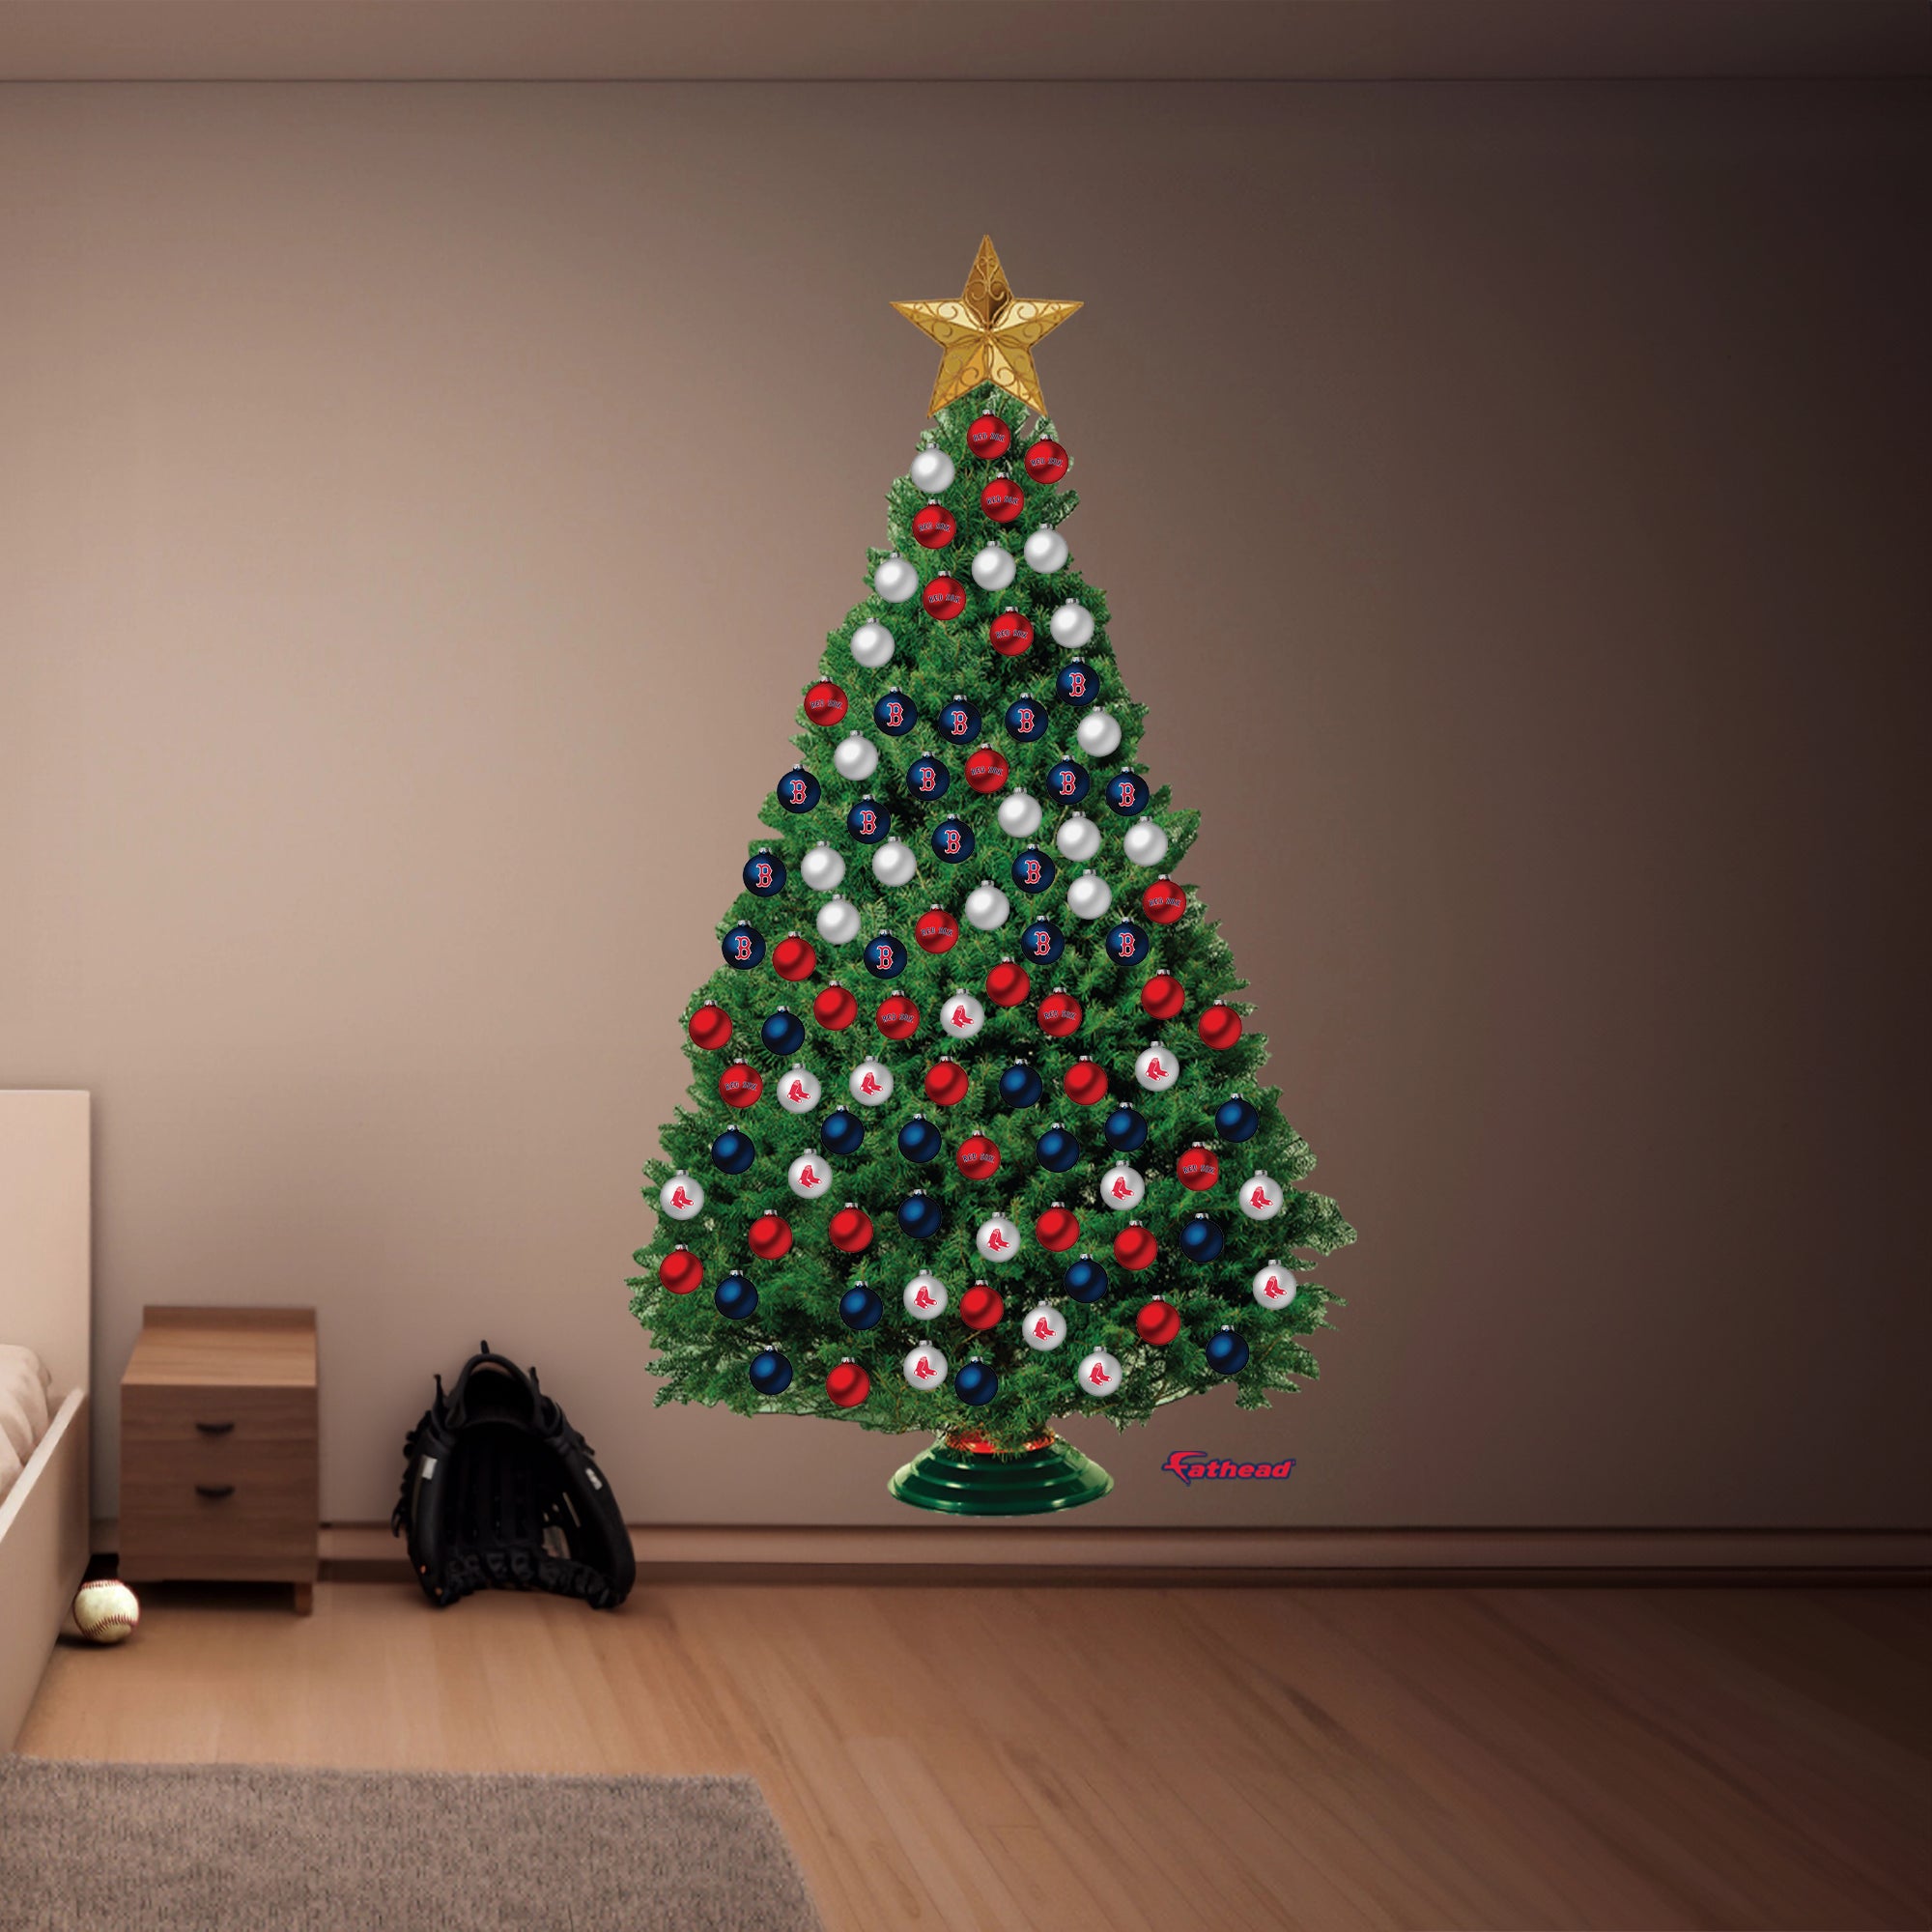 Fathead Christmas Tree Wall Decal